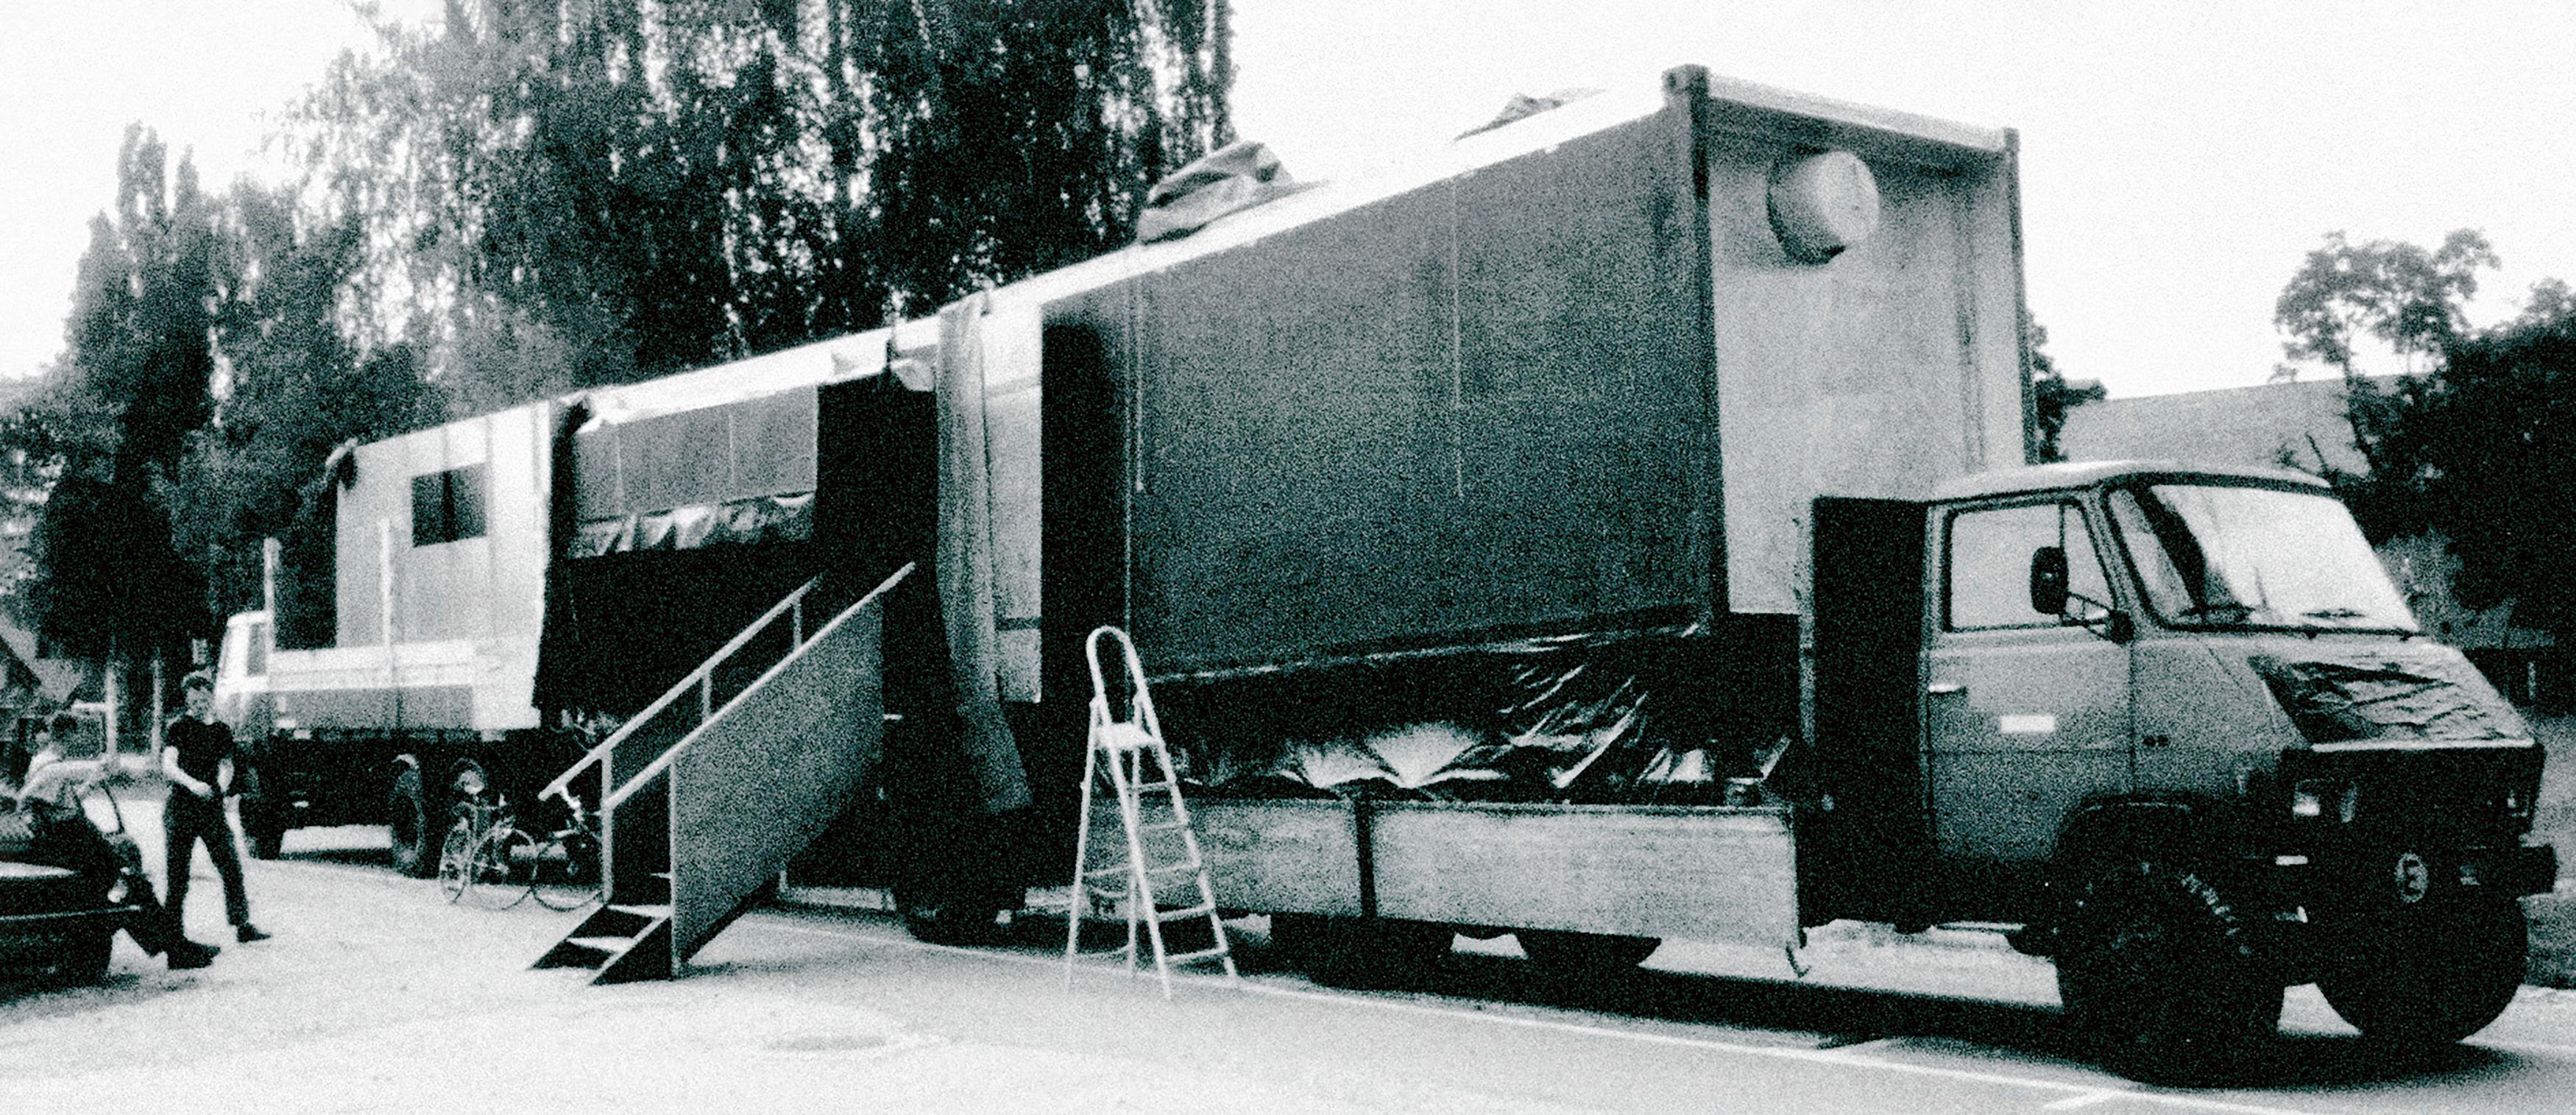 Tode von My friend Martin, 1990, Drei mobile Transportcontainer / Messeparkplatz Graz, Regie: Martin Kušej, Kostüme: Aglaia Foitl